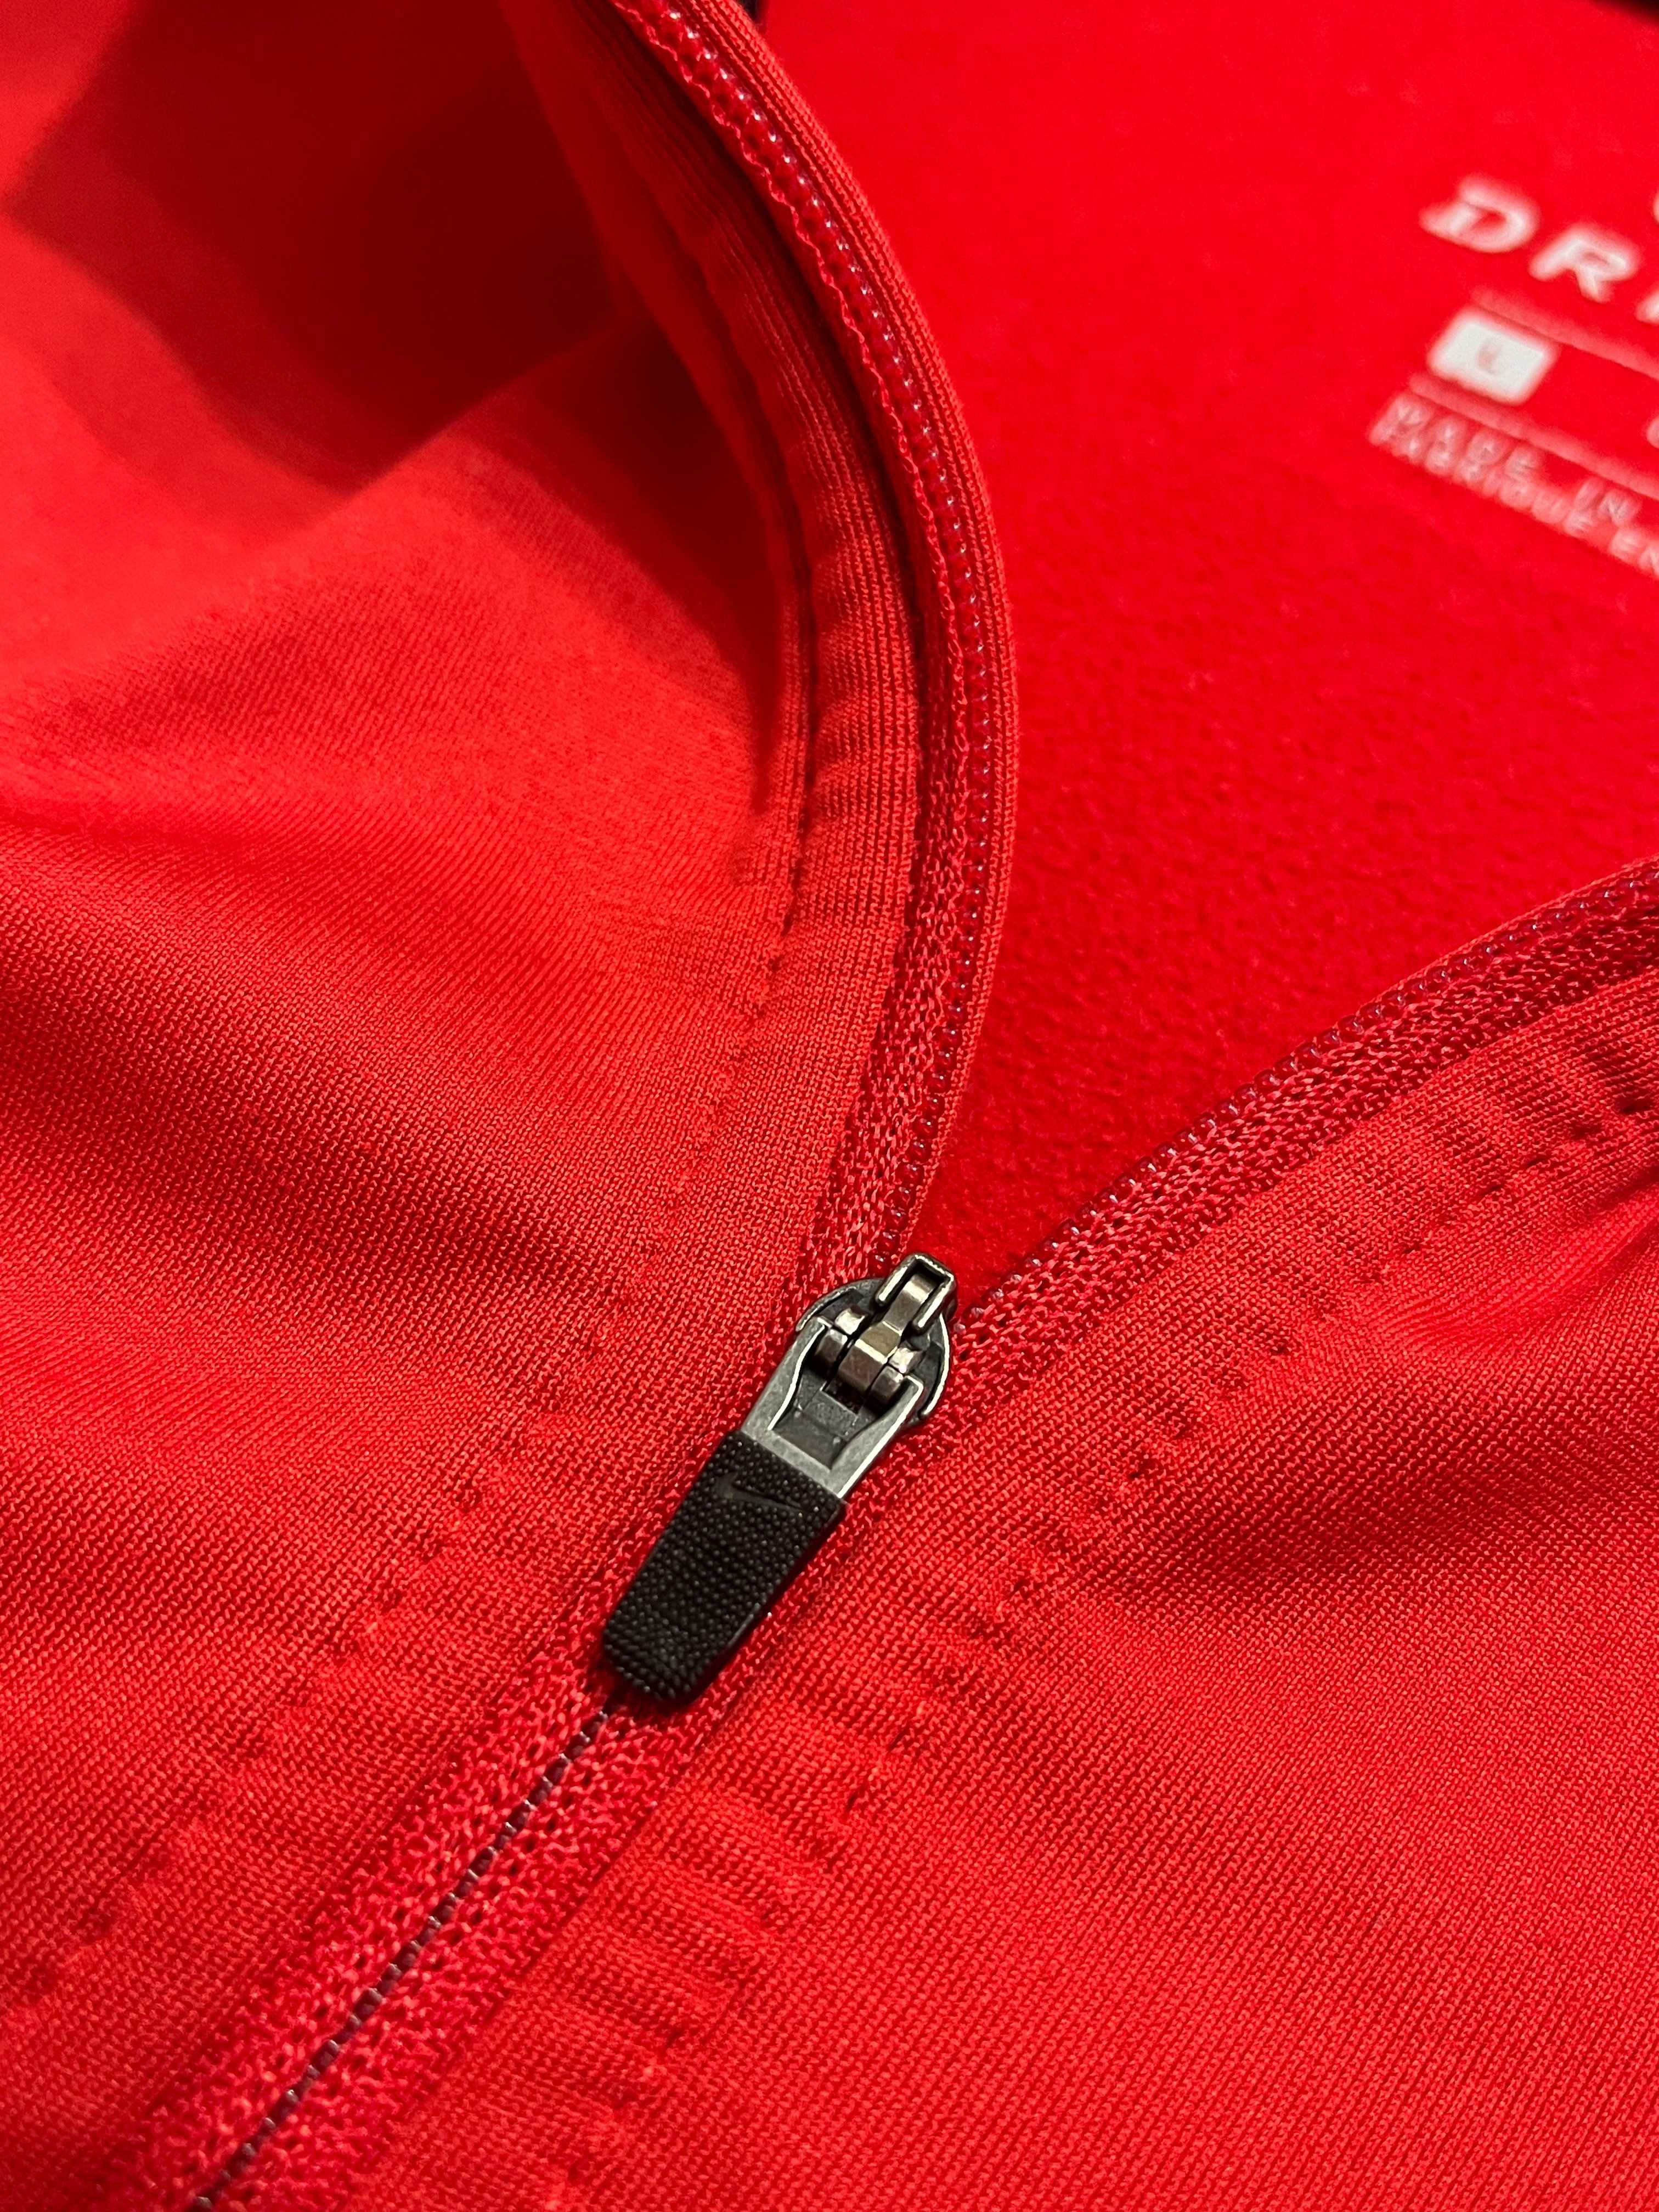 Олімпійка, кофта Nike Dri-Fit Thermal Full Zip (оригінал)